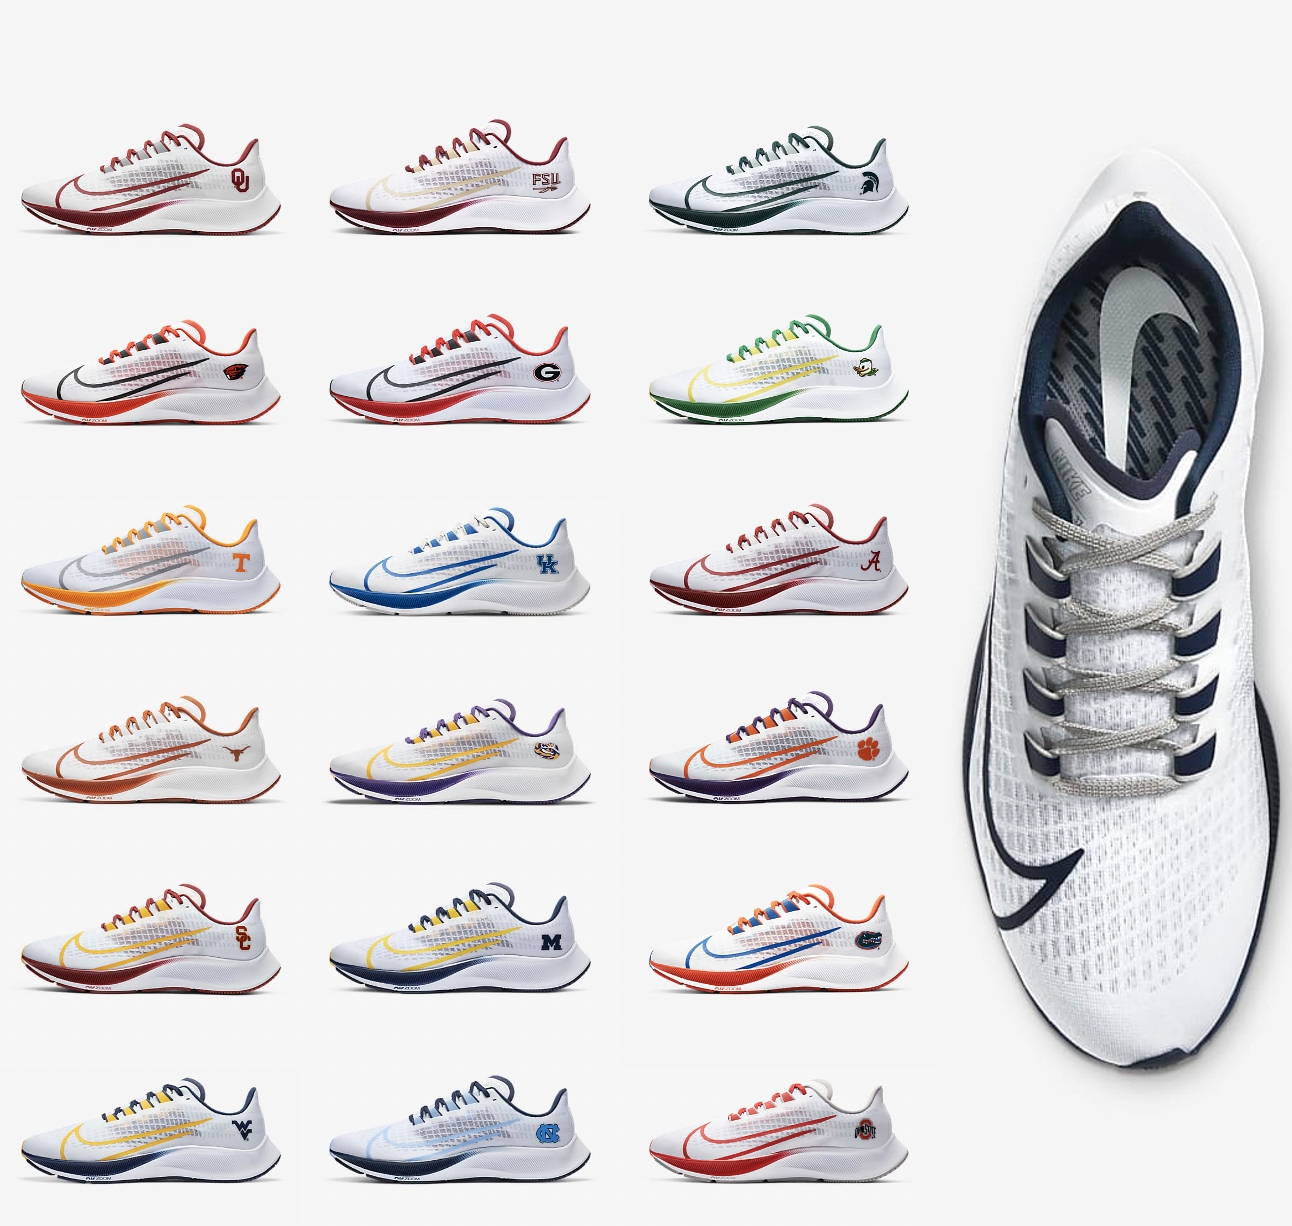 New Nike 2020 Theme Sneakers - Zoom Pegasus 37 Here -